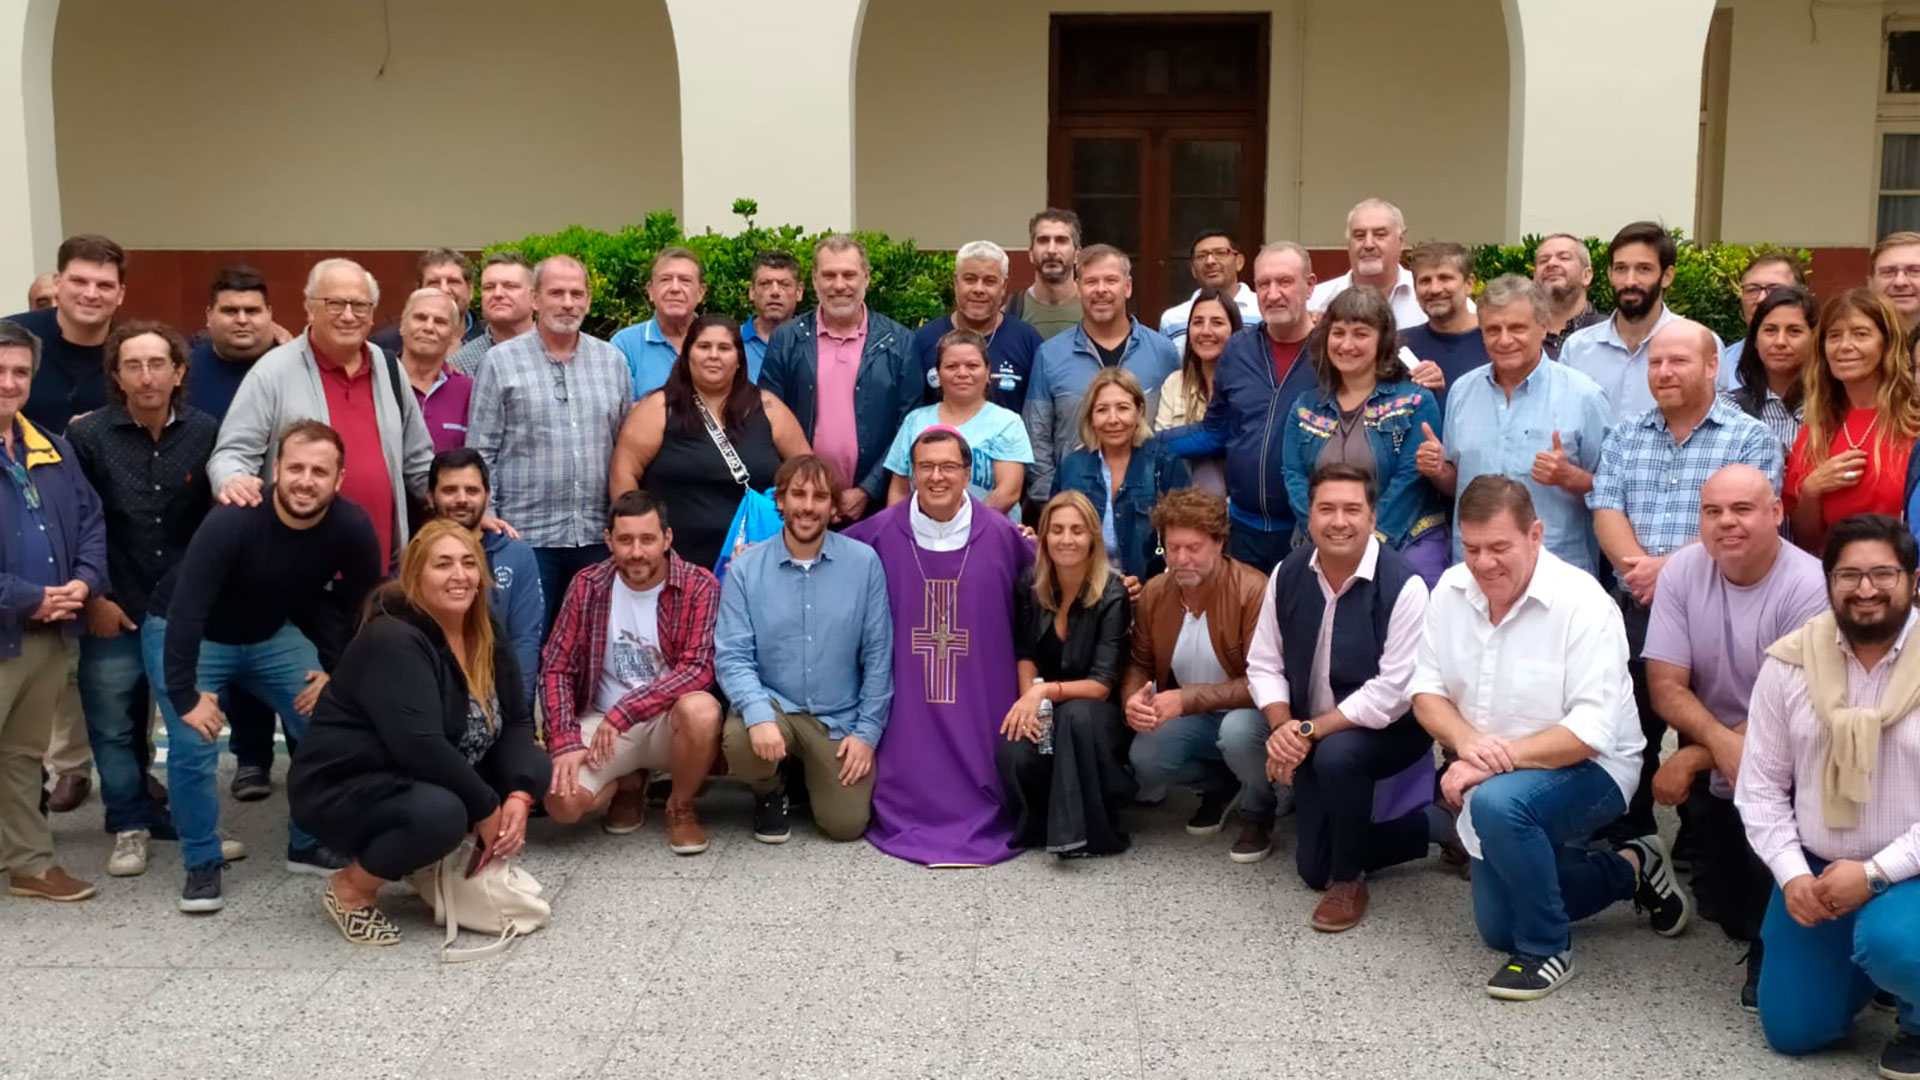 Invitados por el Obispo, 50 dirigentes políticos y sociales participaron de un retiro espiritual en Mar del Plata